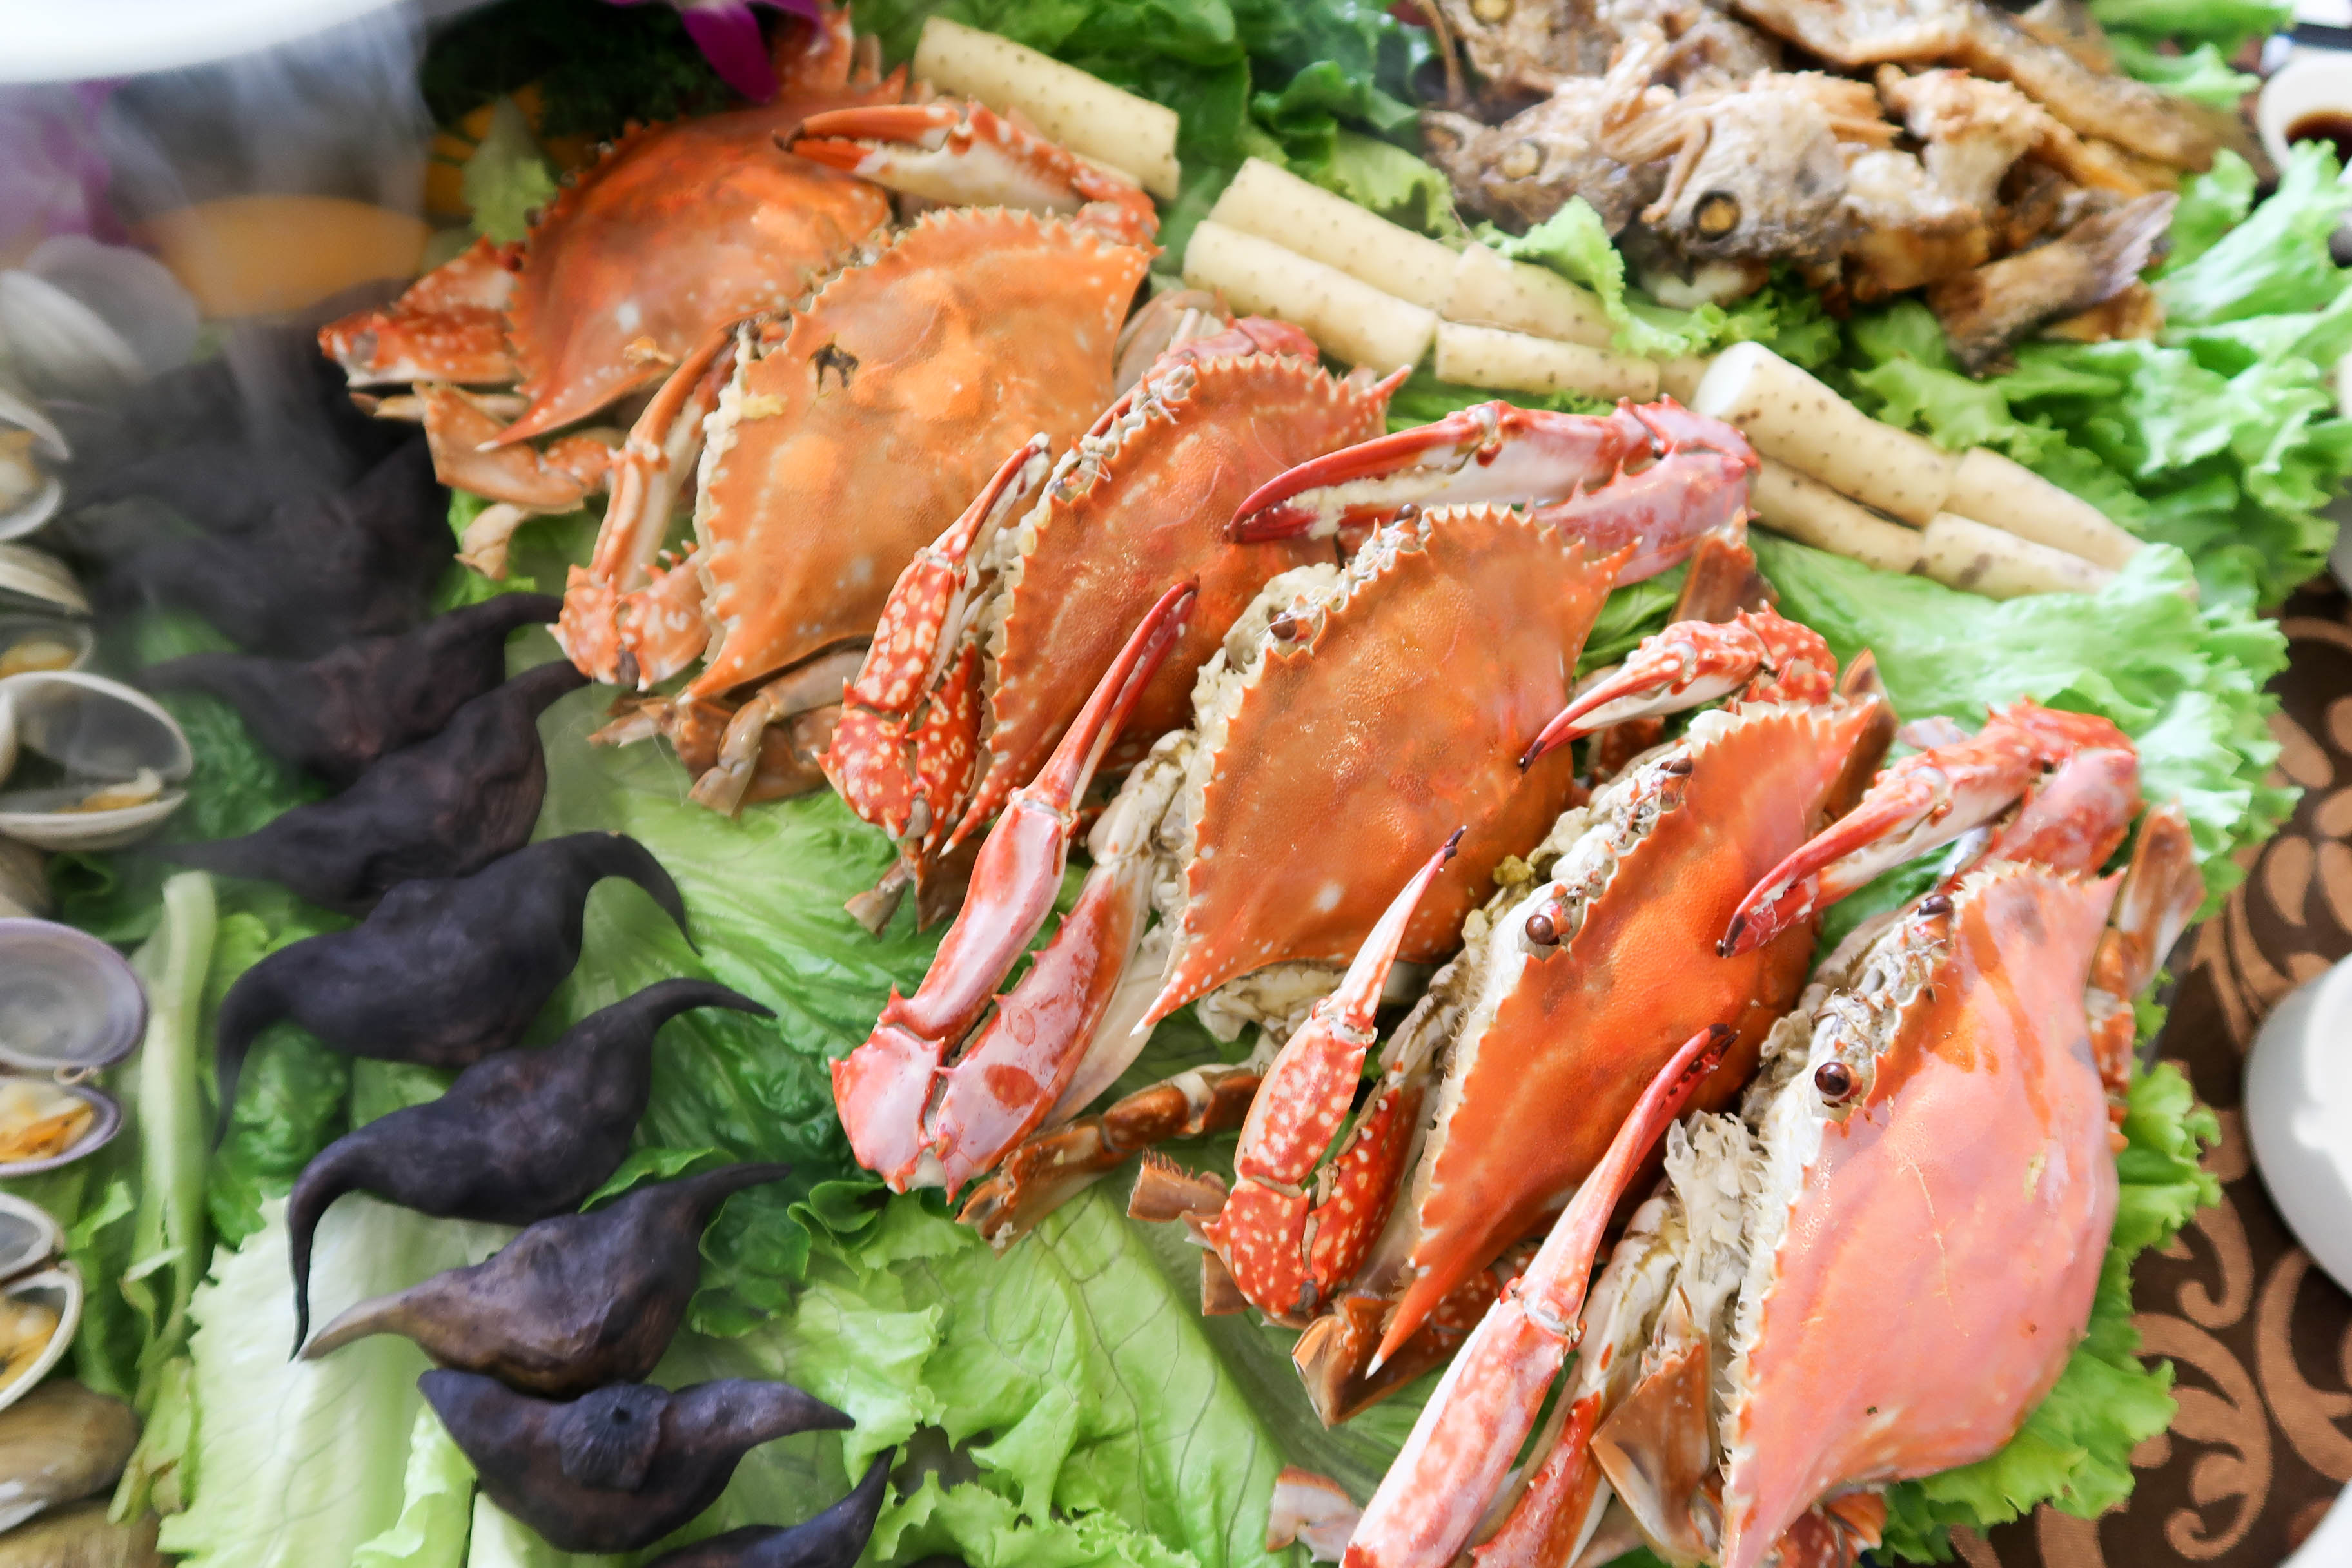 吃在温州:开渔季在雁荡山吃海鲜,不用盘子直接上桌,满满一桌